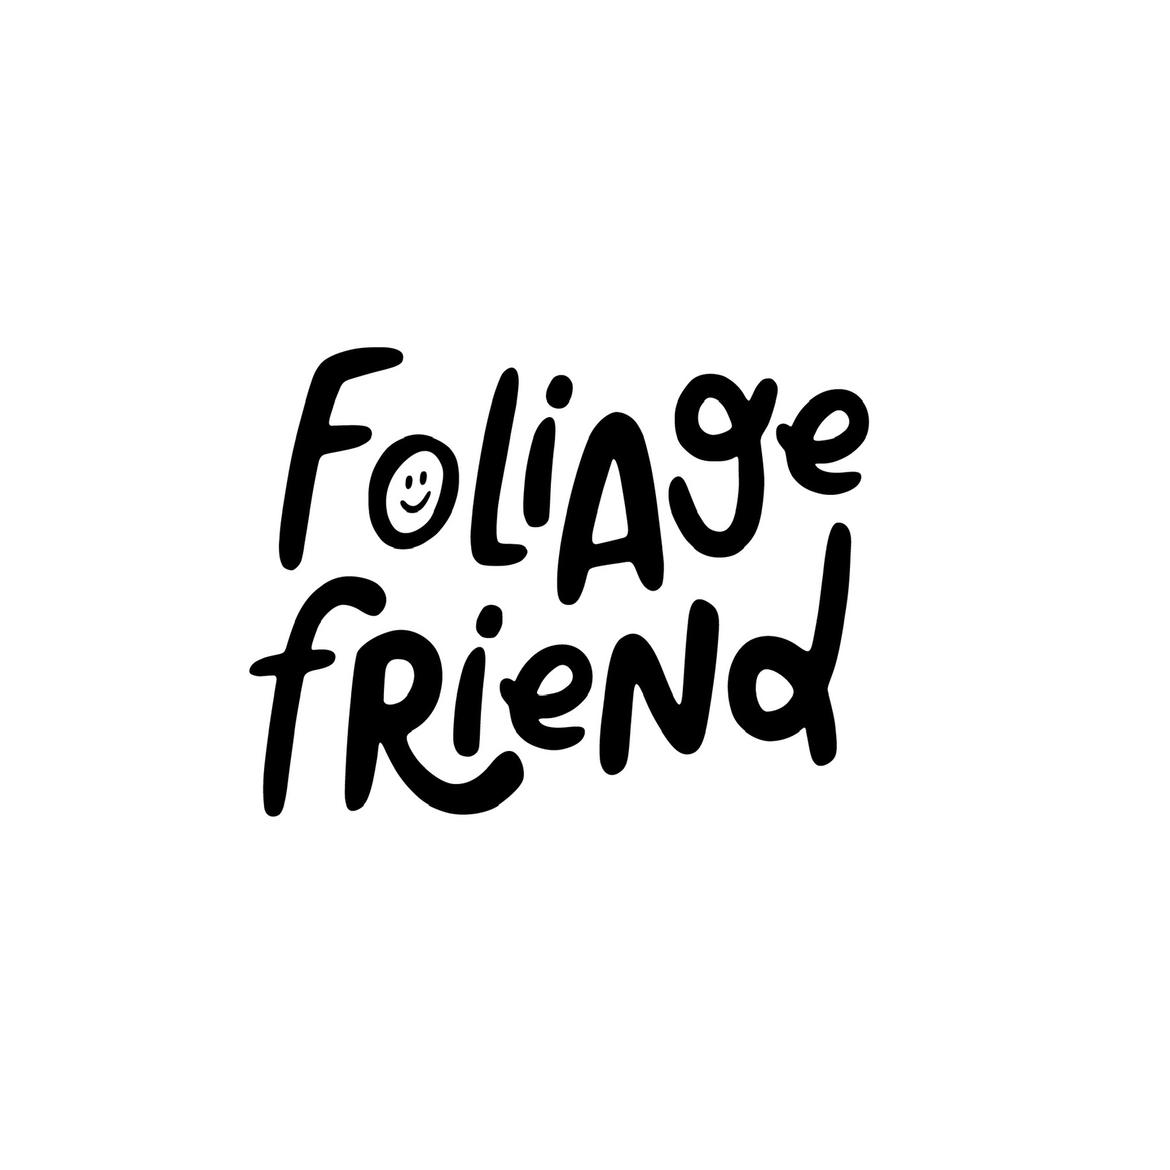 Foliage Friend's images